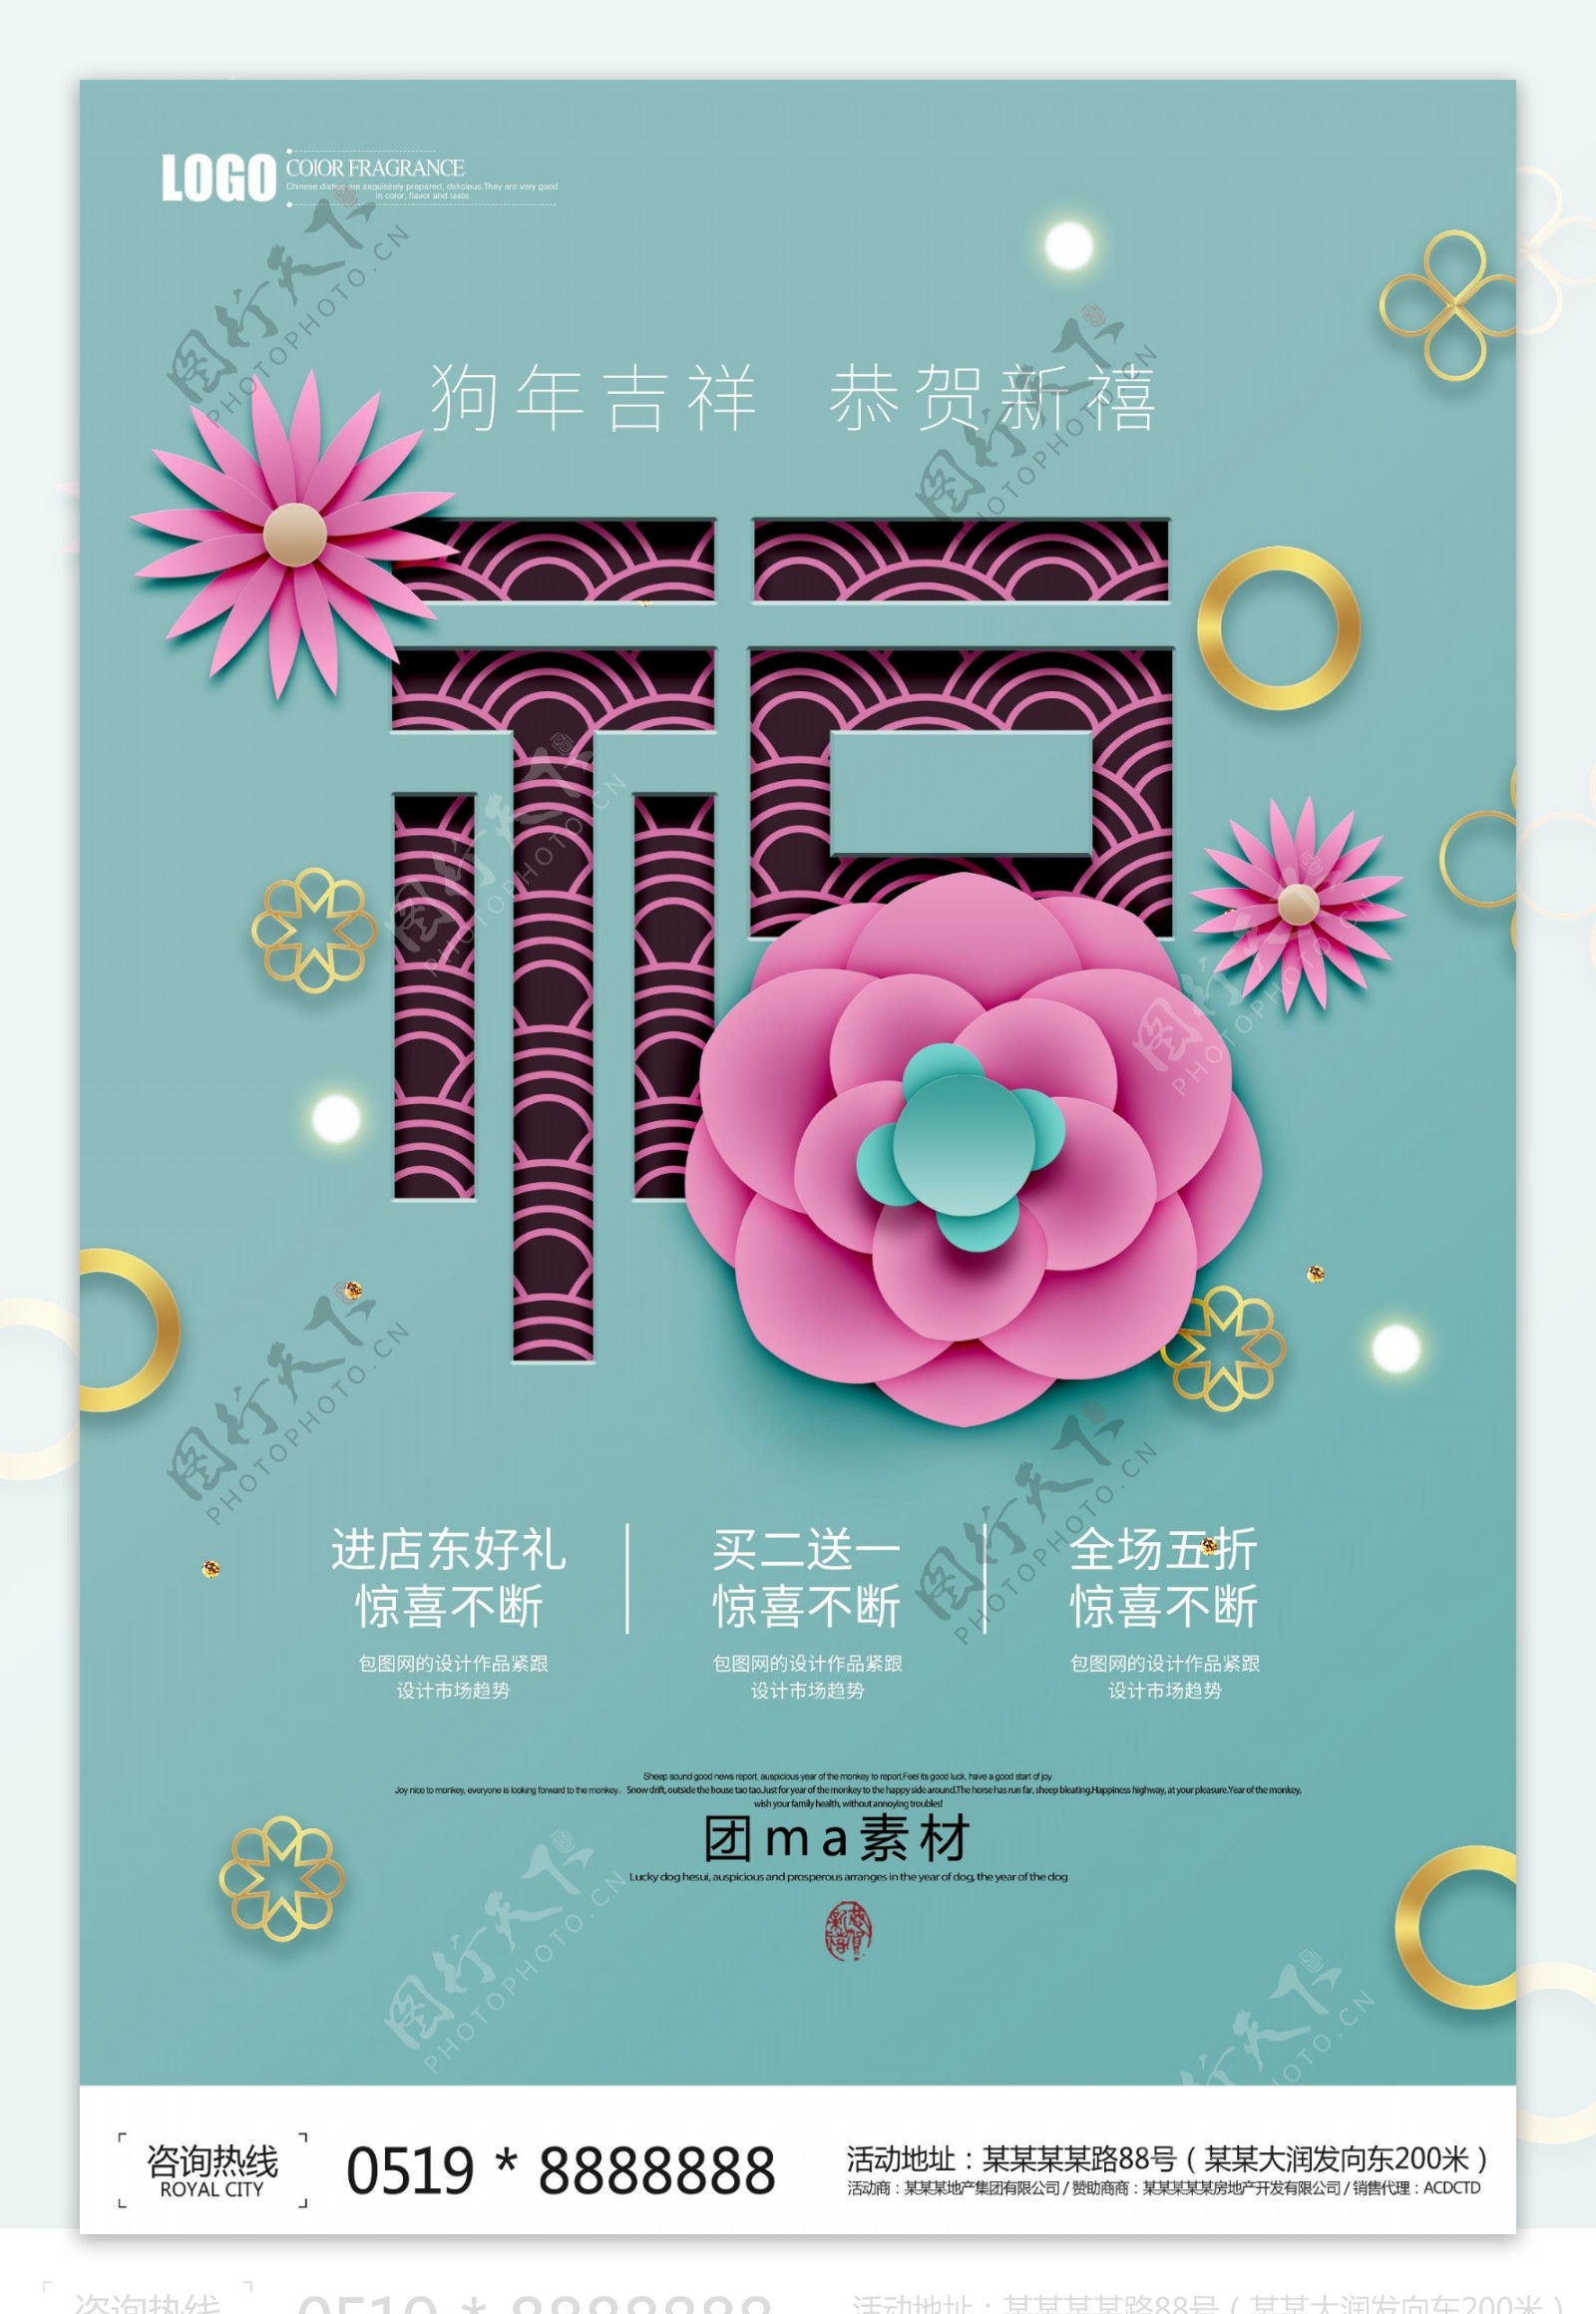 创意2018狗年春节海报设计